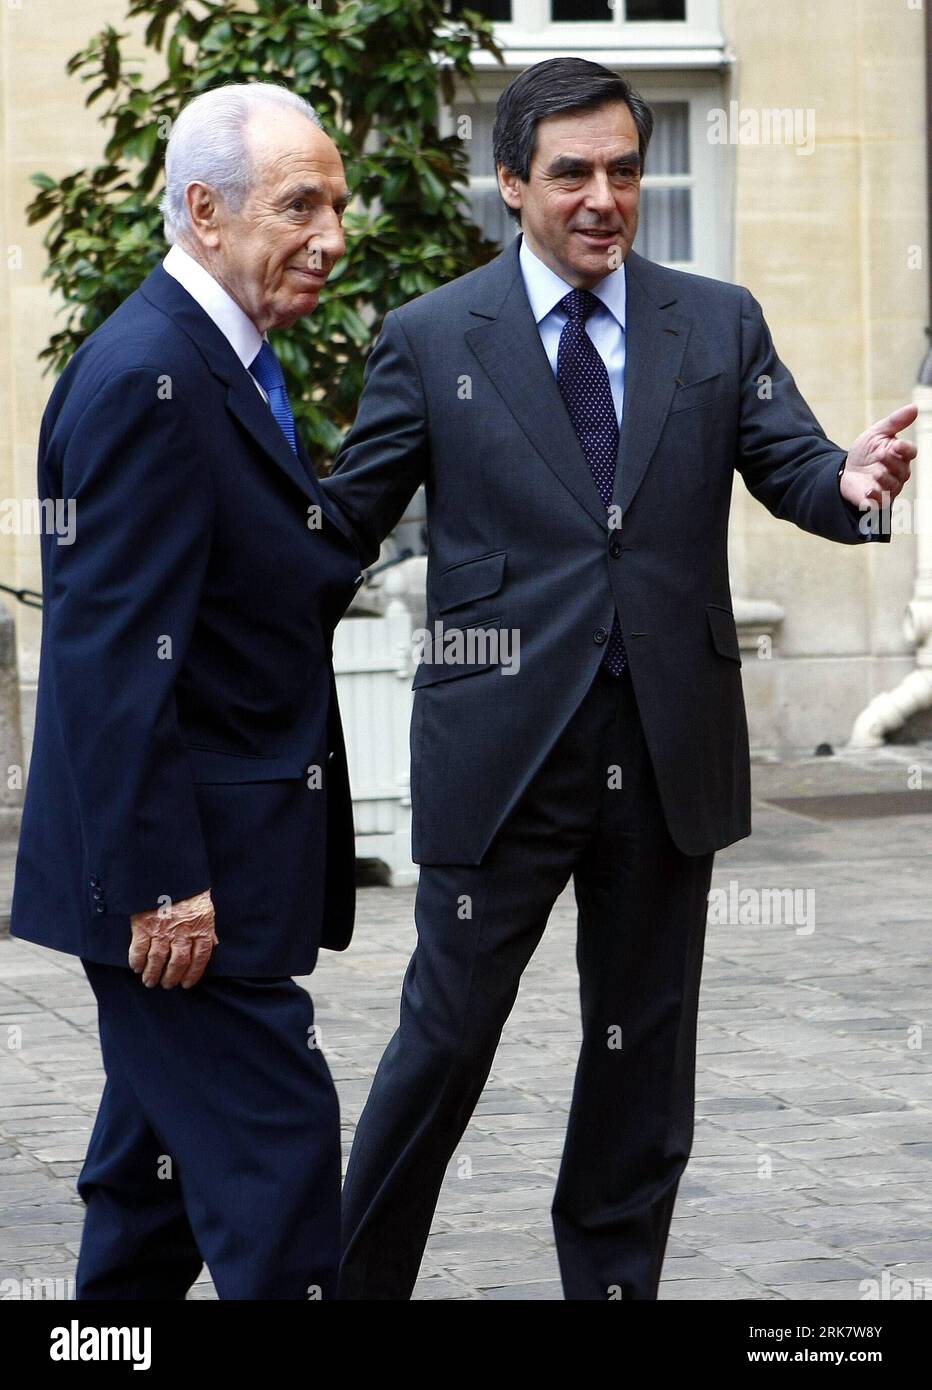 Bildnummer : 53939206 Datum : 13.04.2010 Copyright : imago/Xinhua (100414) -- PARIS, 14 avril 2010 (Xinhua) -- le Premier ministre français François Fillon (à droite) salue la visite du président israélien Shimon Peres avant leur rencontre dans les bureaux de l'Hôtel Matignon à Paris, capitale de la France, le 13 avril 2010. Peres a déclaré ici mardi que les négociations de paix entre Israël et les Palestiniens devraient être relancées prochainement. (Xinhua/Zhang Yuwei) (ypf) (3)FRANCE-PARIS-ISRAEL-PERES-VISIT PUBLICATIONxNOTxINxCHN Politik people kbdig xub 2010 hoch premiumd xint Bildnummer 53939206 Date 13 04 2010 Copyright Banque D'Images